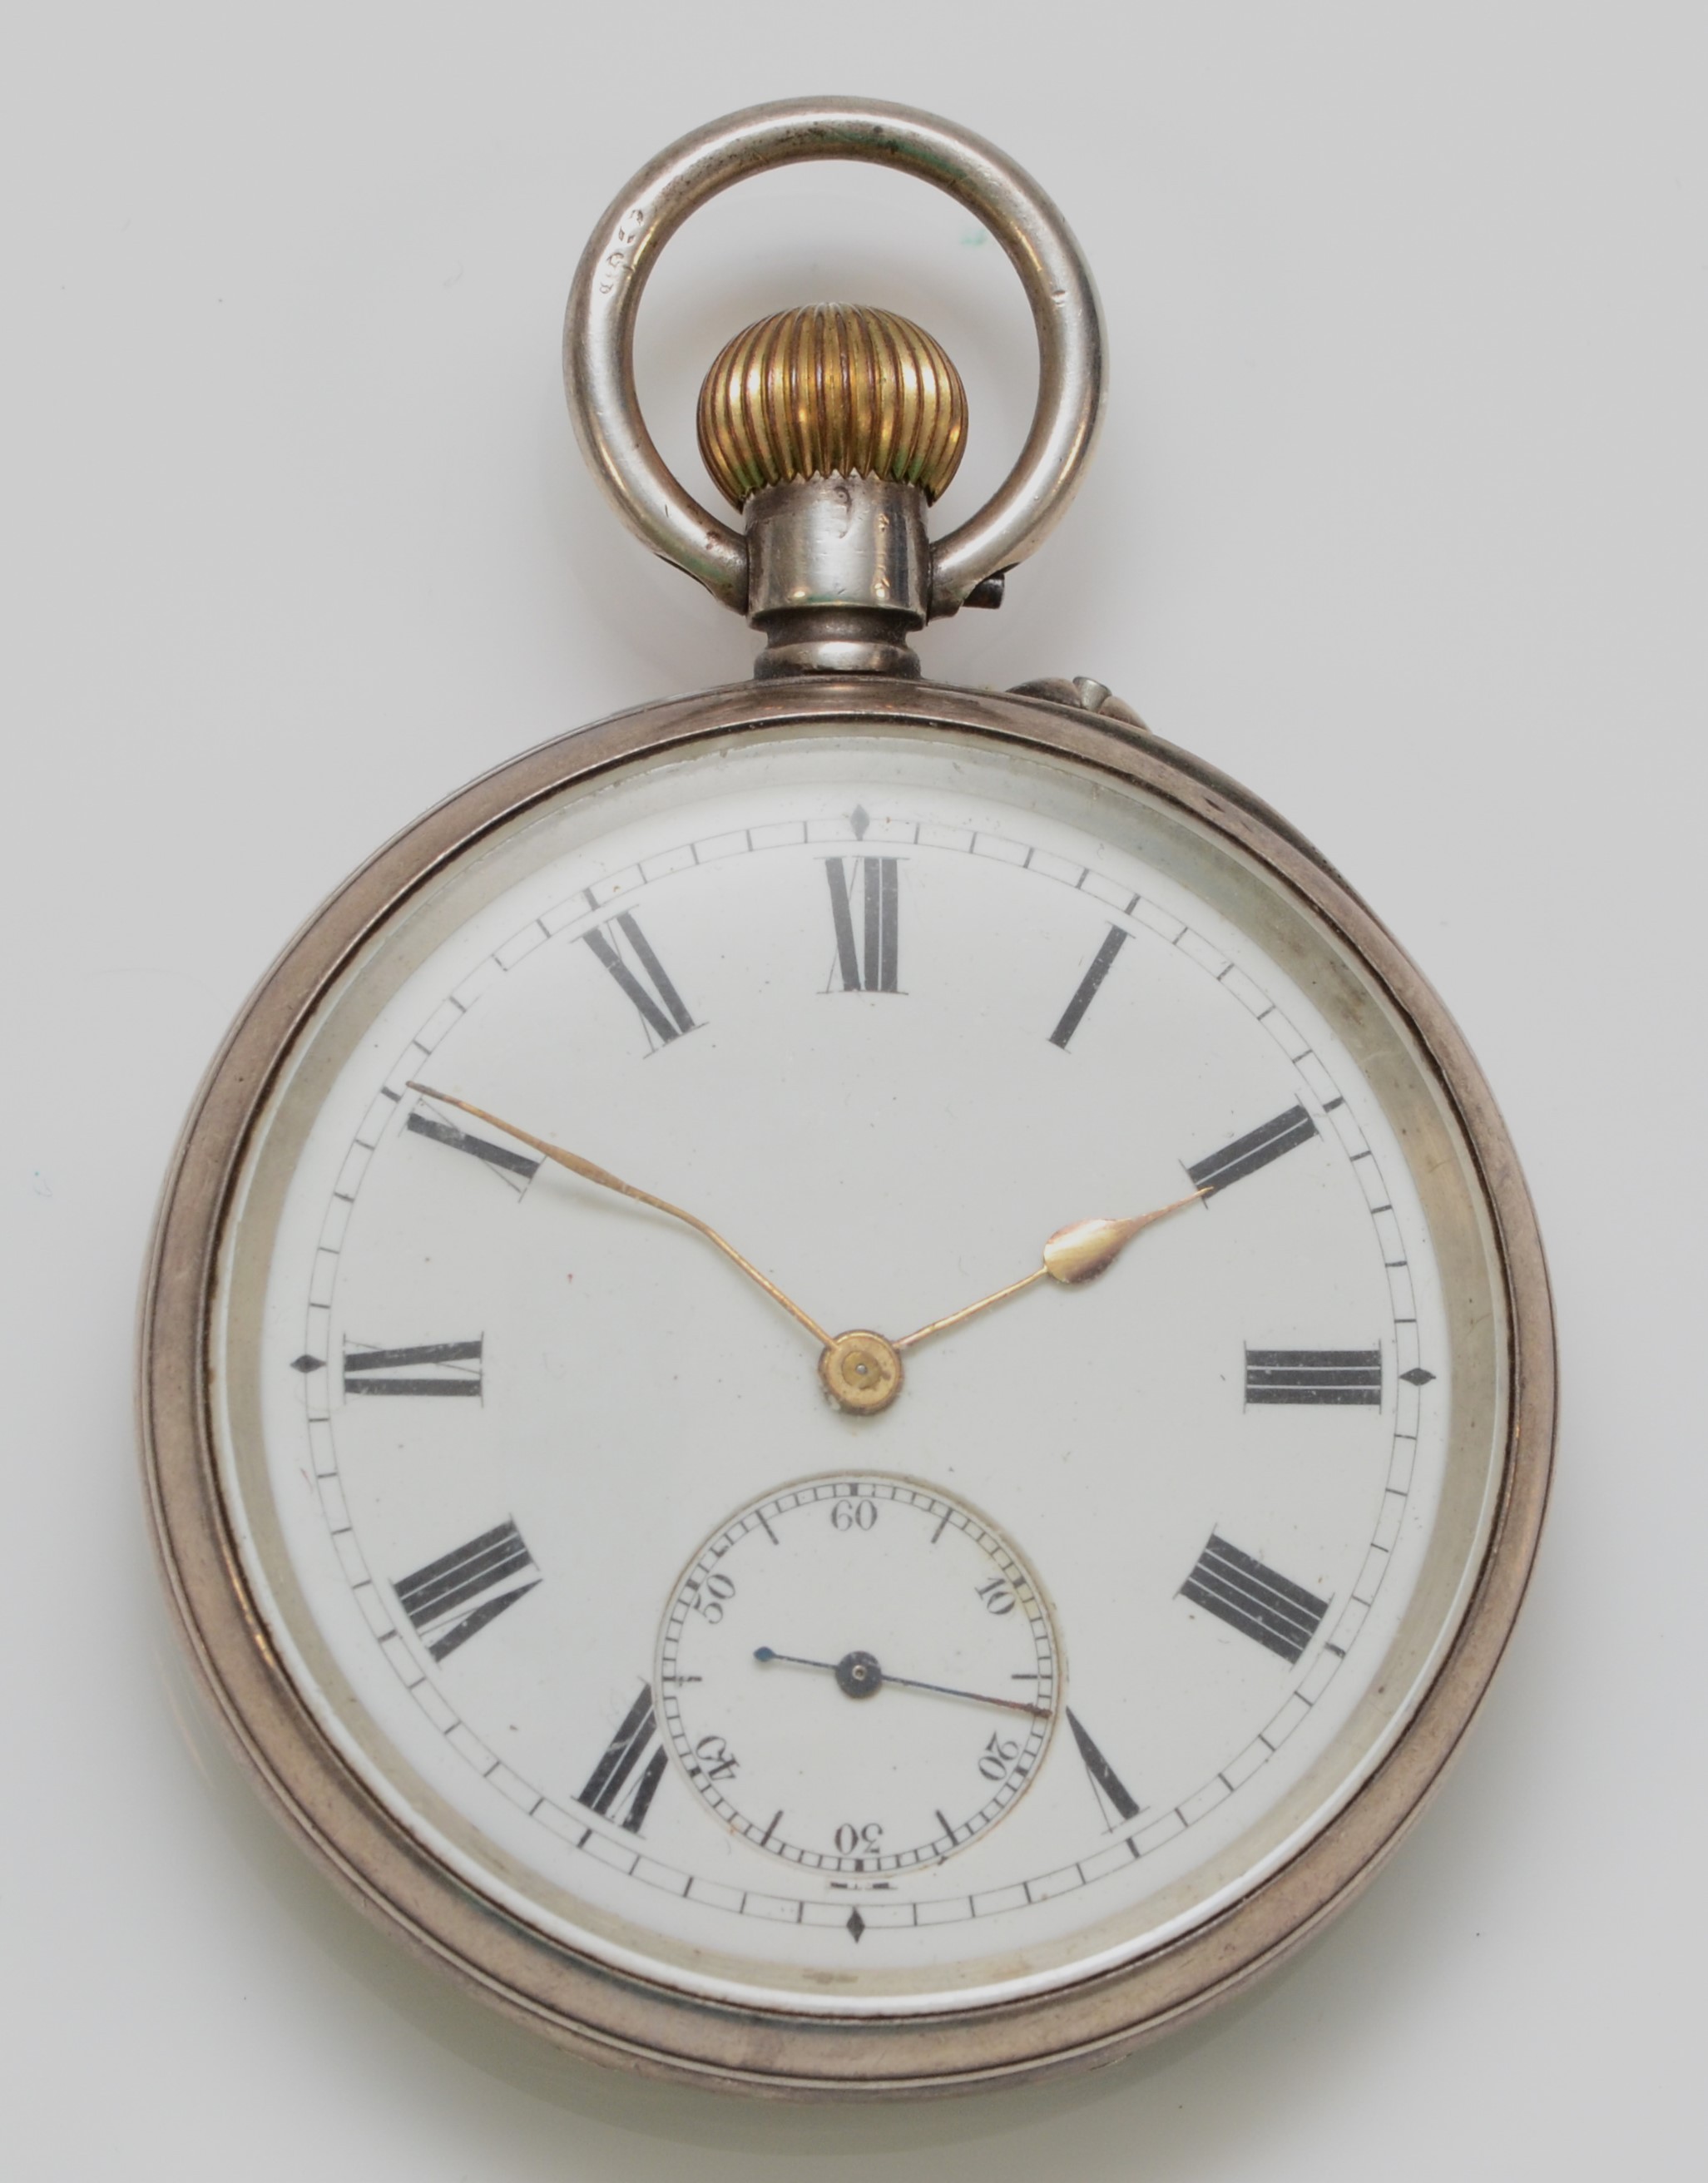 Benson, a silver keyless wind open face pocket watch, London import 1907, retailed by J.W. Benson,